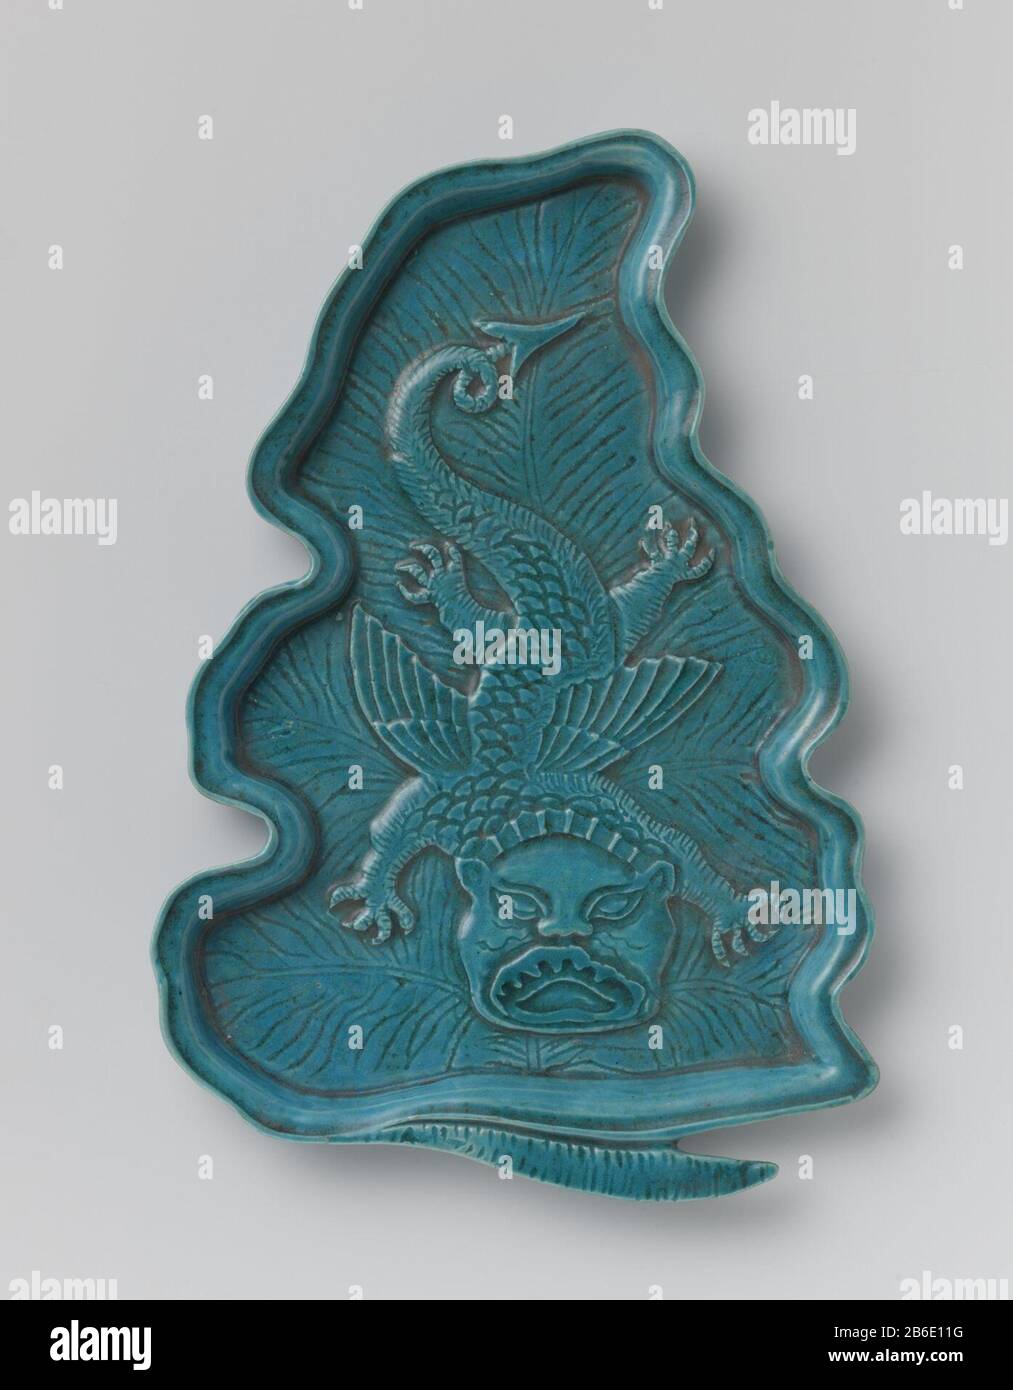 Leaf-shaped dish with dragon Bladvormige onderschotel van dekselkom van porselein, bedekt met een monochroom turquoise, blauw glazuur. De schotel met ingrgrifte nerven en een vliegende, vierklauwige draak in reliëf. Monochromen. Manufacturer : pottenbakker: anoniemPlaats manufacture: China Dating: ca. 1775 - ca. 1799School / stijl: Qing-dynastie (1644-1912) / Qianlong-periode (1736-1795) / Jiaqing-periode (1796-1820) Physical kenmerken: porselein met een monochroom glazuur Material: porselein glazuur Techniek: vormen / bakken / glazuren Dimensions: h 2 cm.  × l 29,4 cm.  × b 19,8 cm. Onderwerp Stock Photo